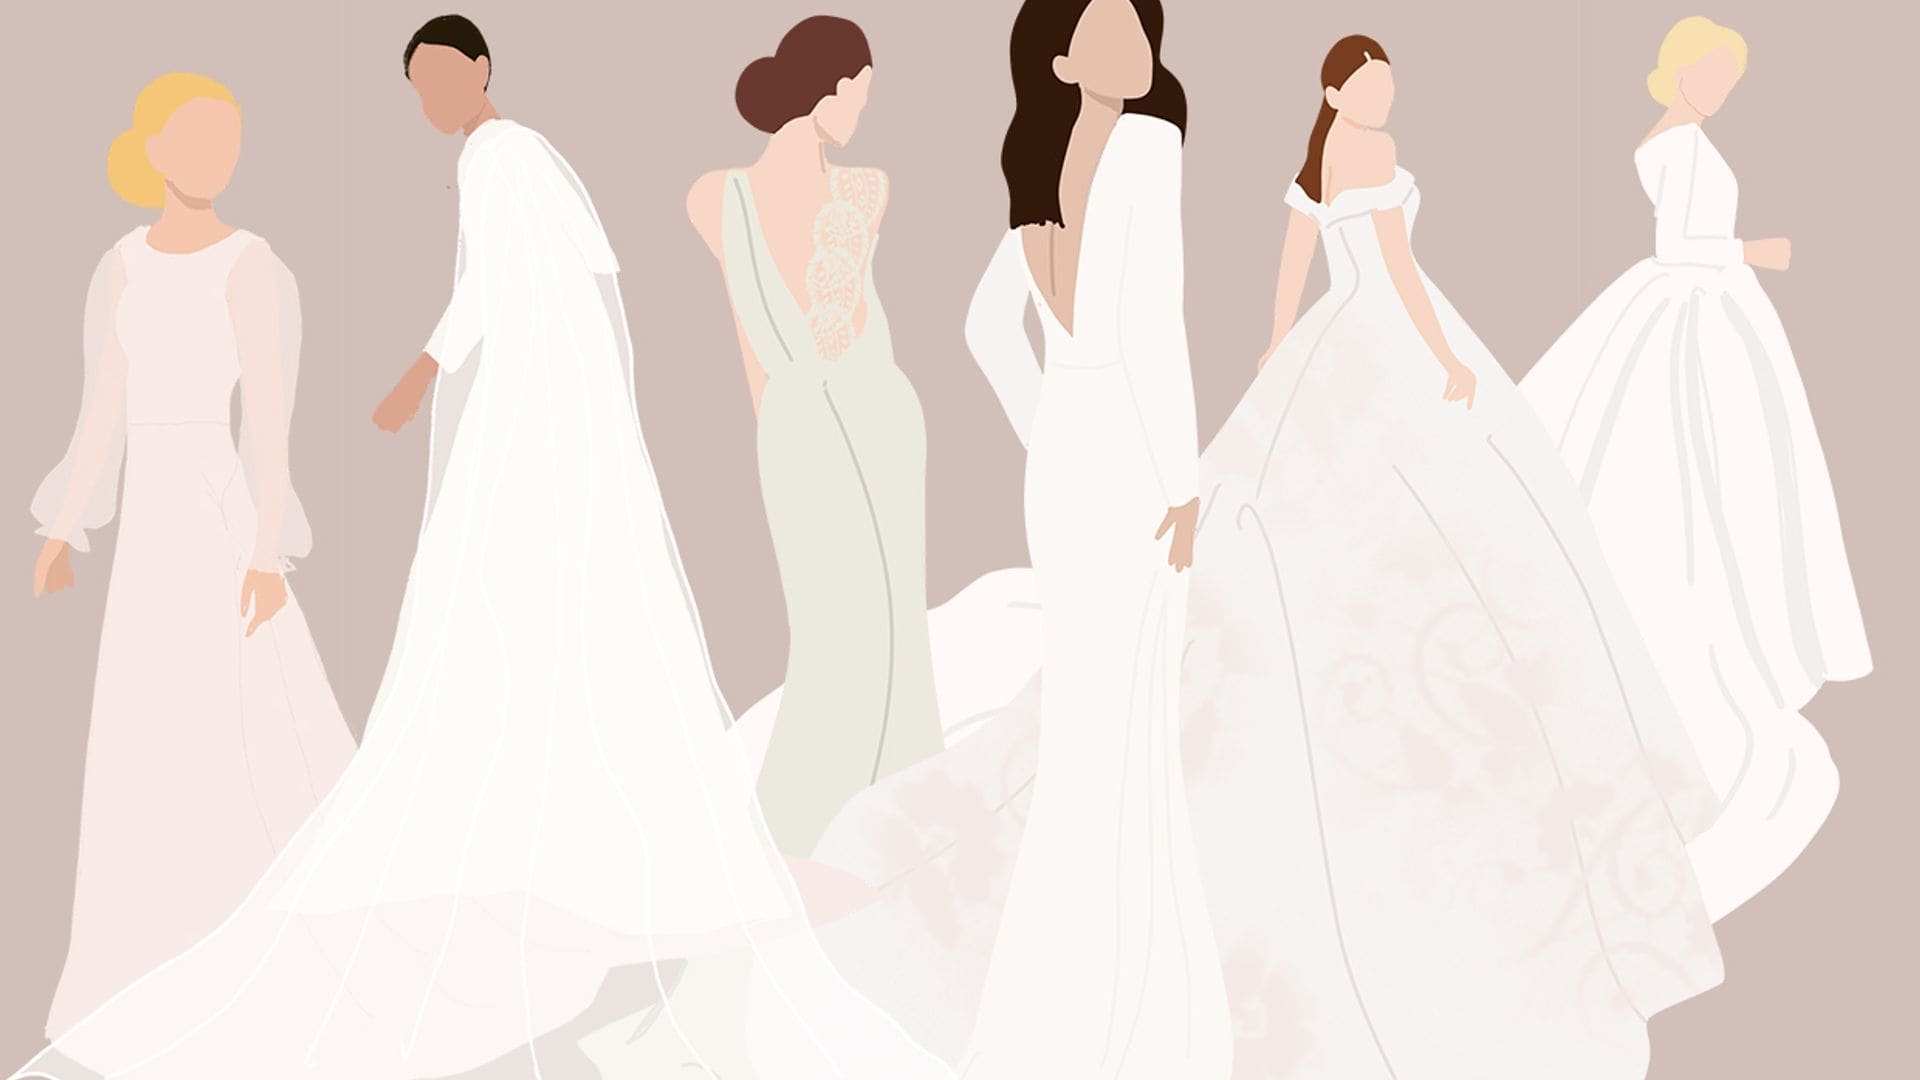 ¿Sabes qué cola queda mejor con tu vestido de novia? Descúbrelo en nuestra guía ilustrada